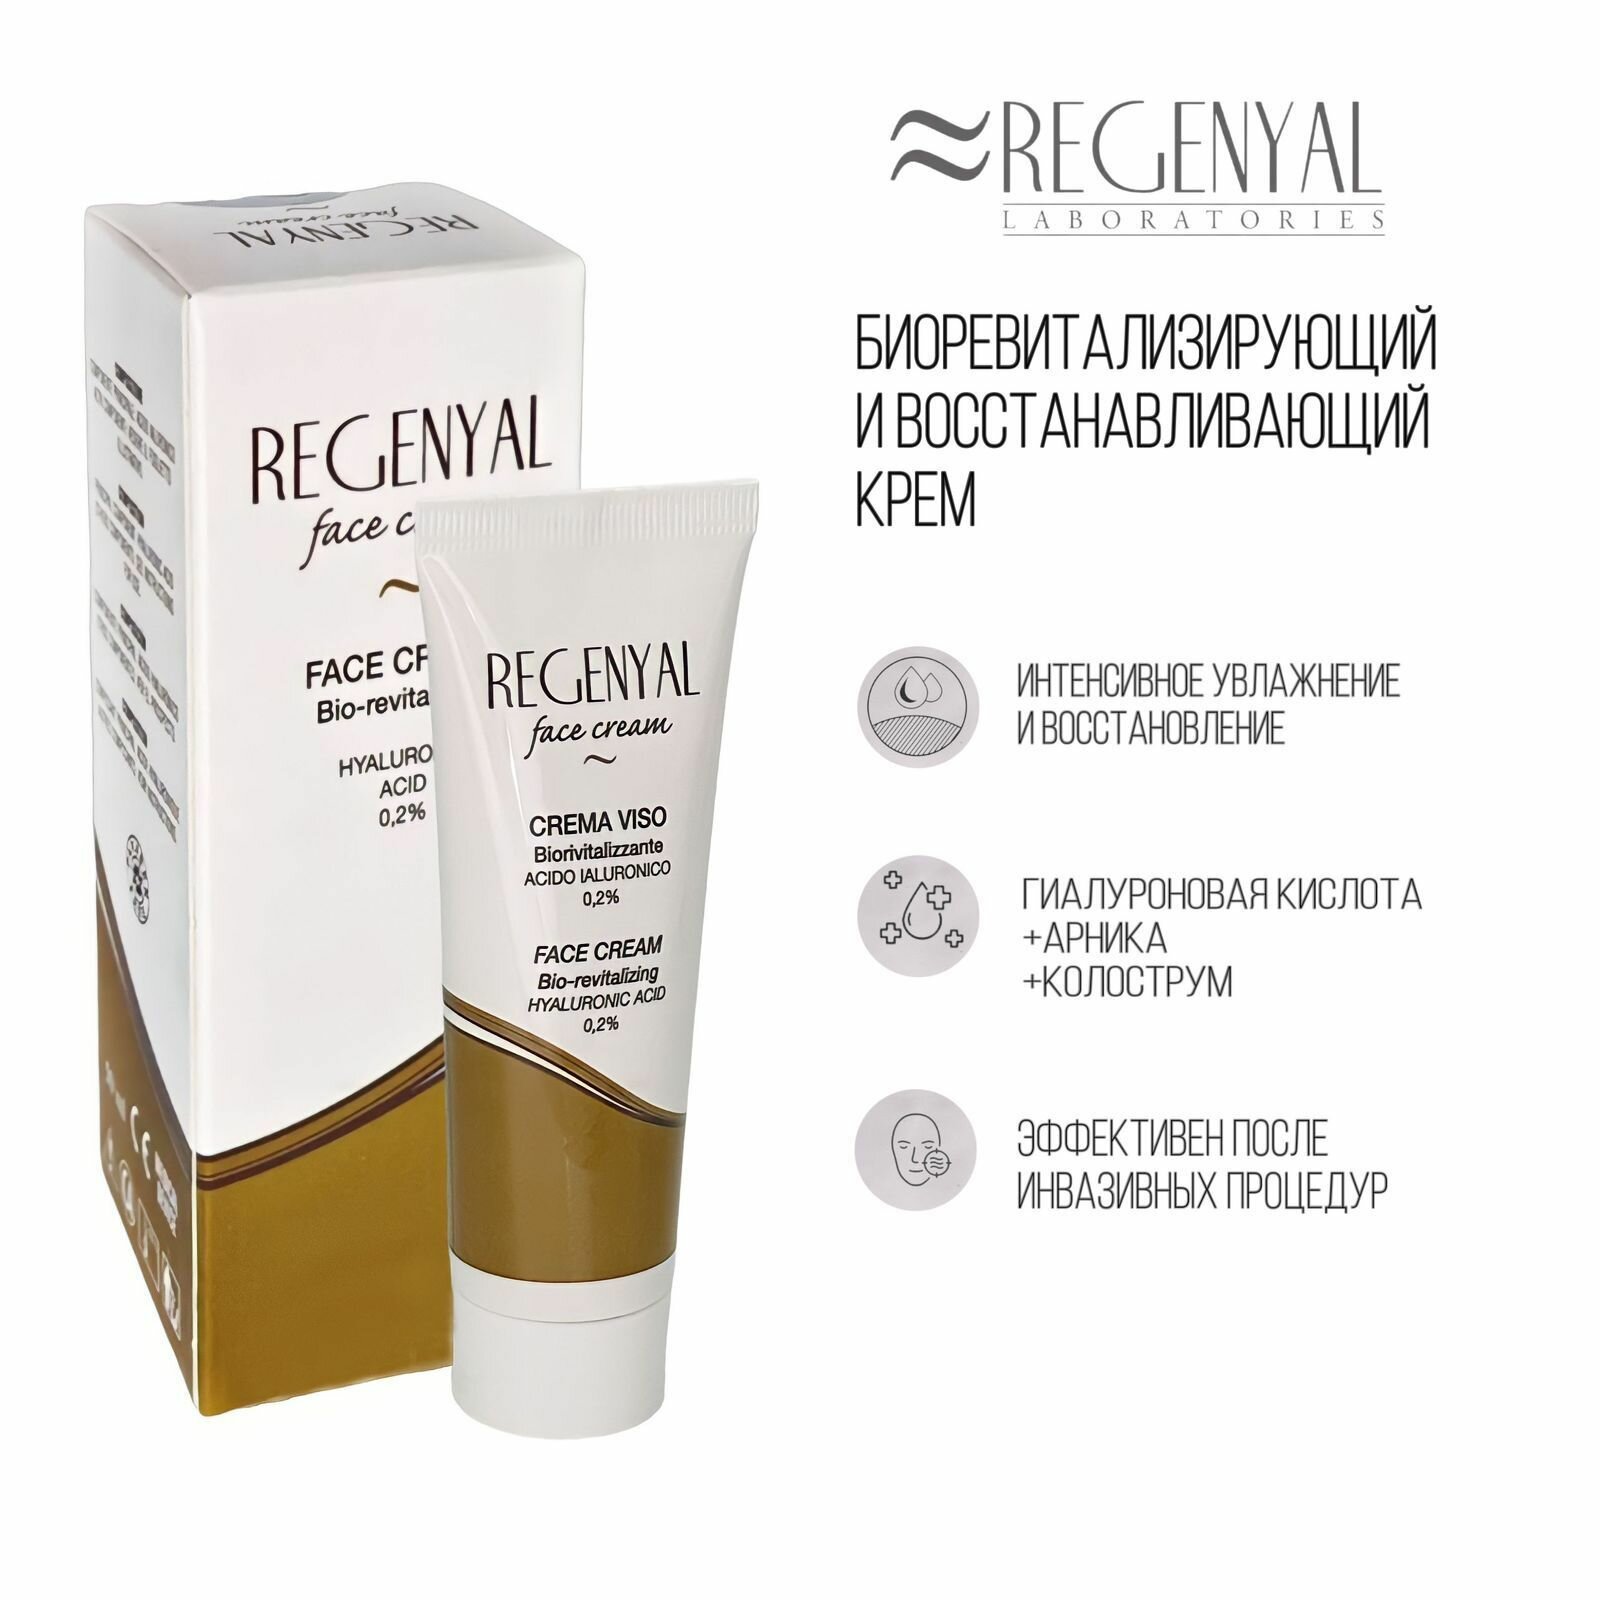 Regenyal face cream, Биоревитализирующий и восстанавливающий крем для лица, 50 мл.